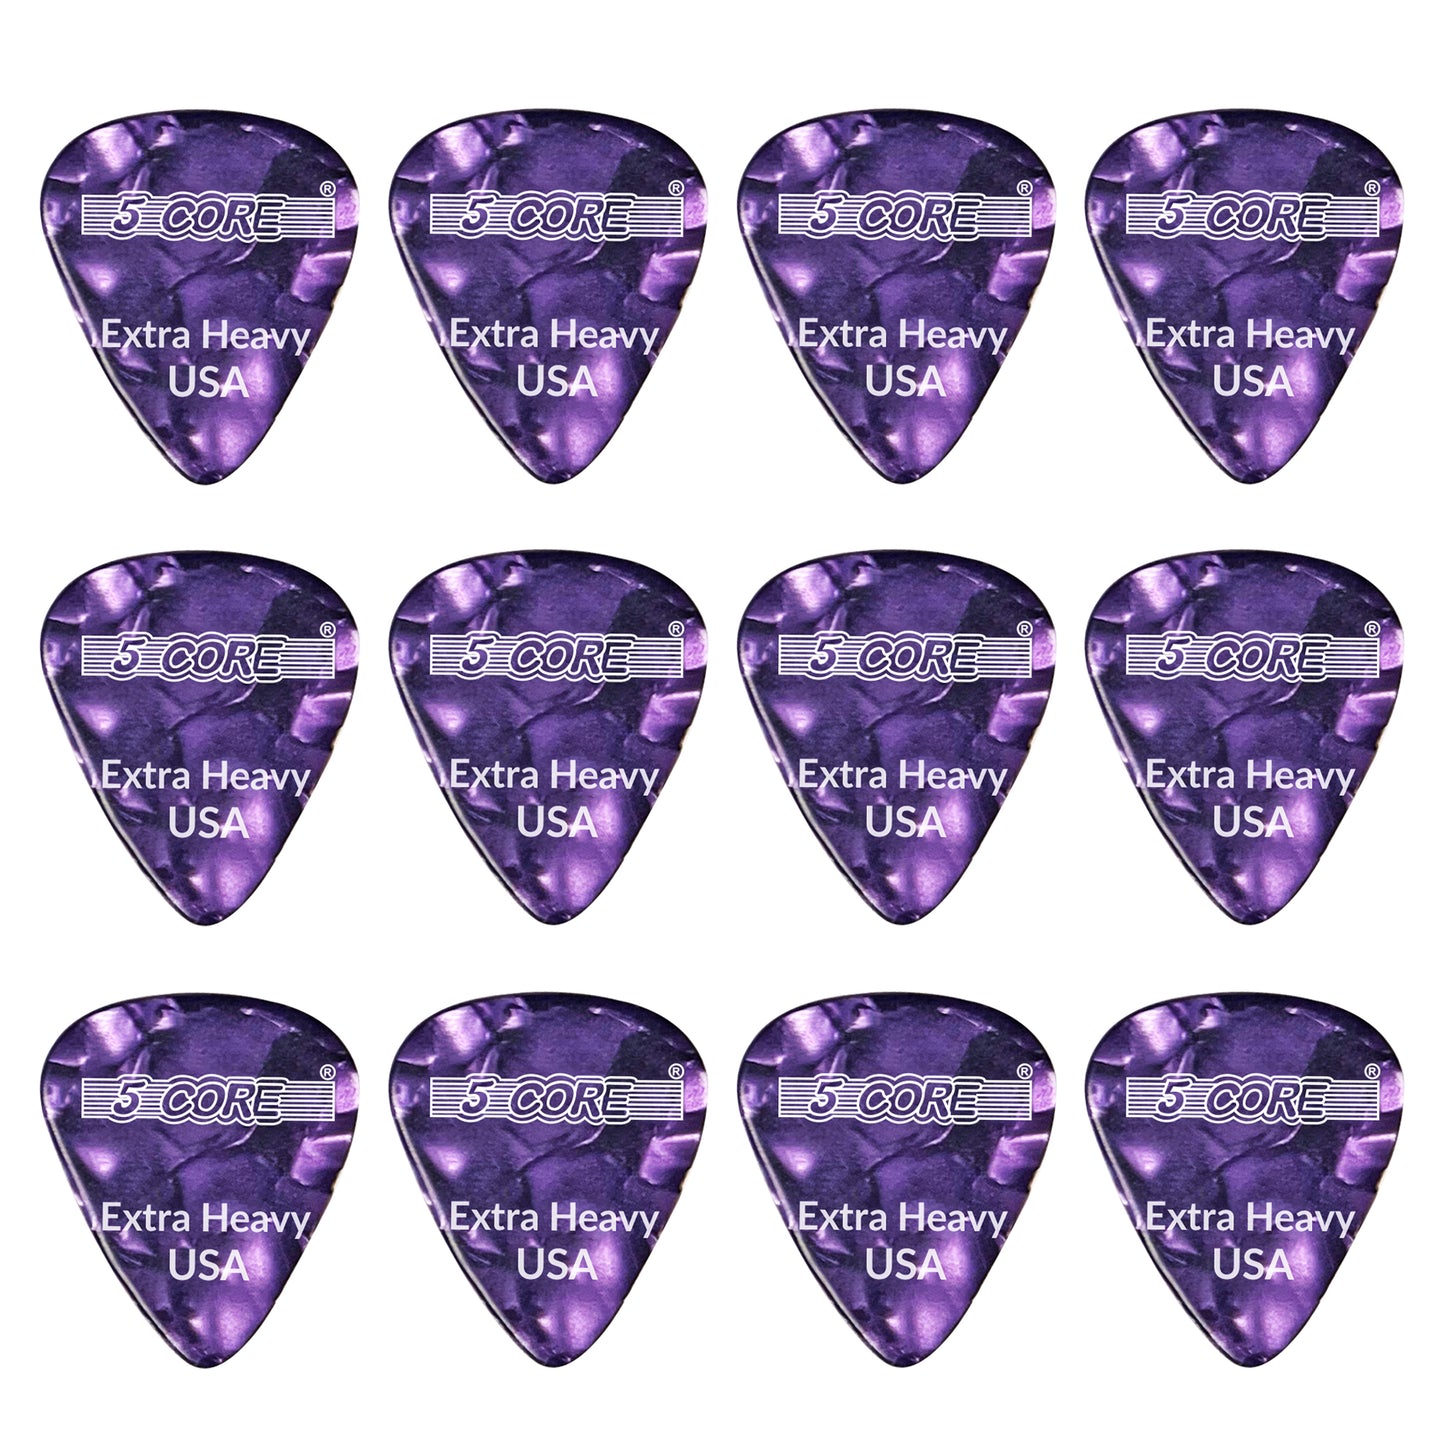 5 Core Guitar Picks | Purple Color Pick for Guitar 12 Pcs | Extra Heavy Gauge Durable Premium Celluloid Guitar Picks 1.2mm- G PICK EXH PR 12PK